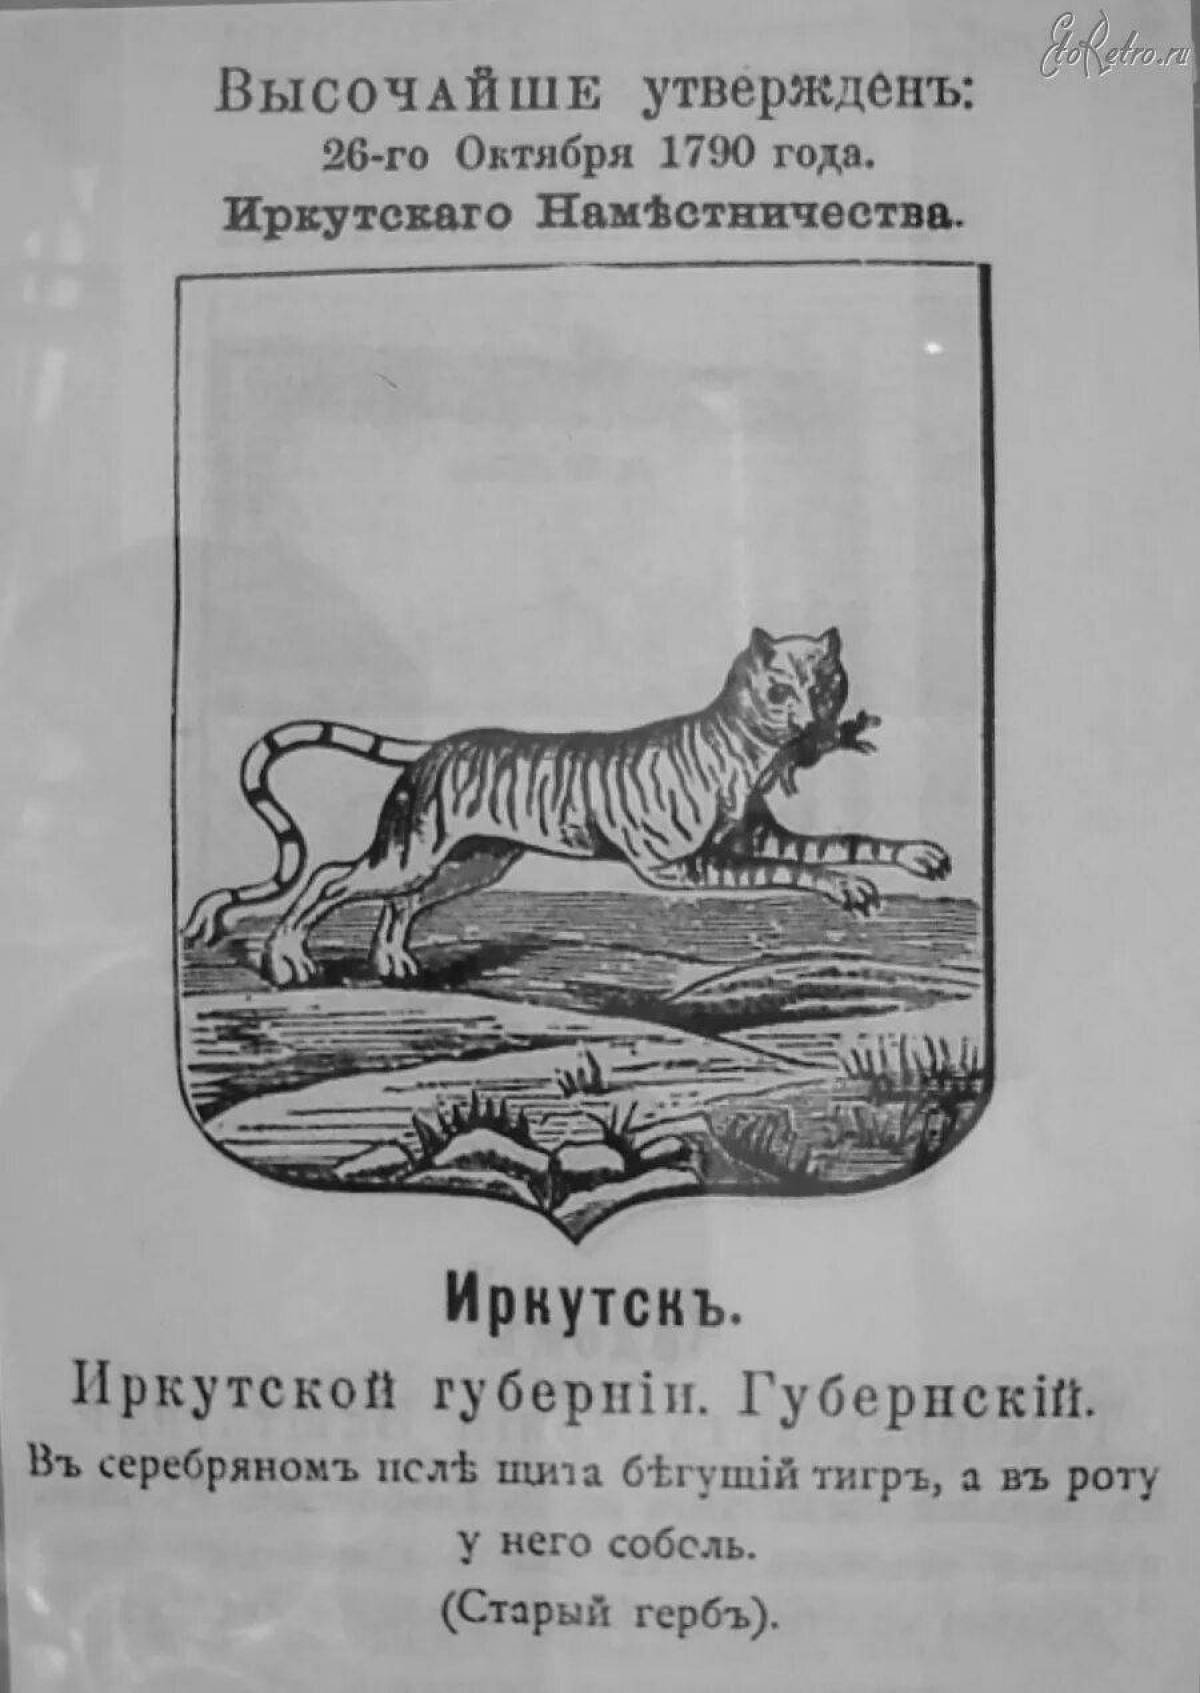 Ornate coloring coat of arms of irkutsk